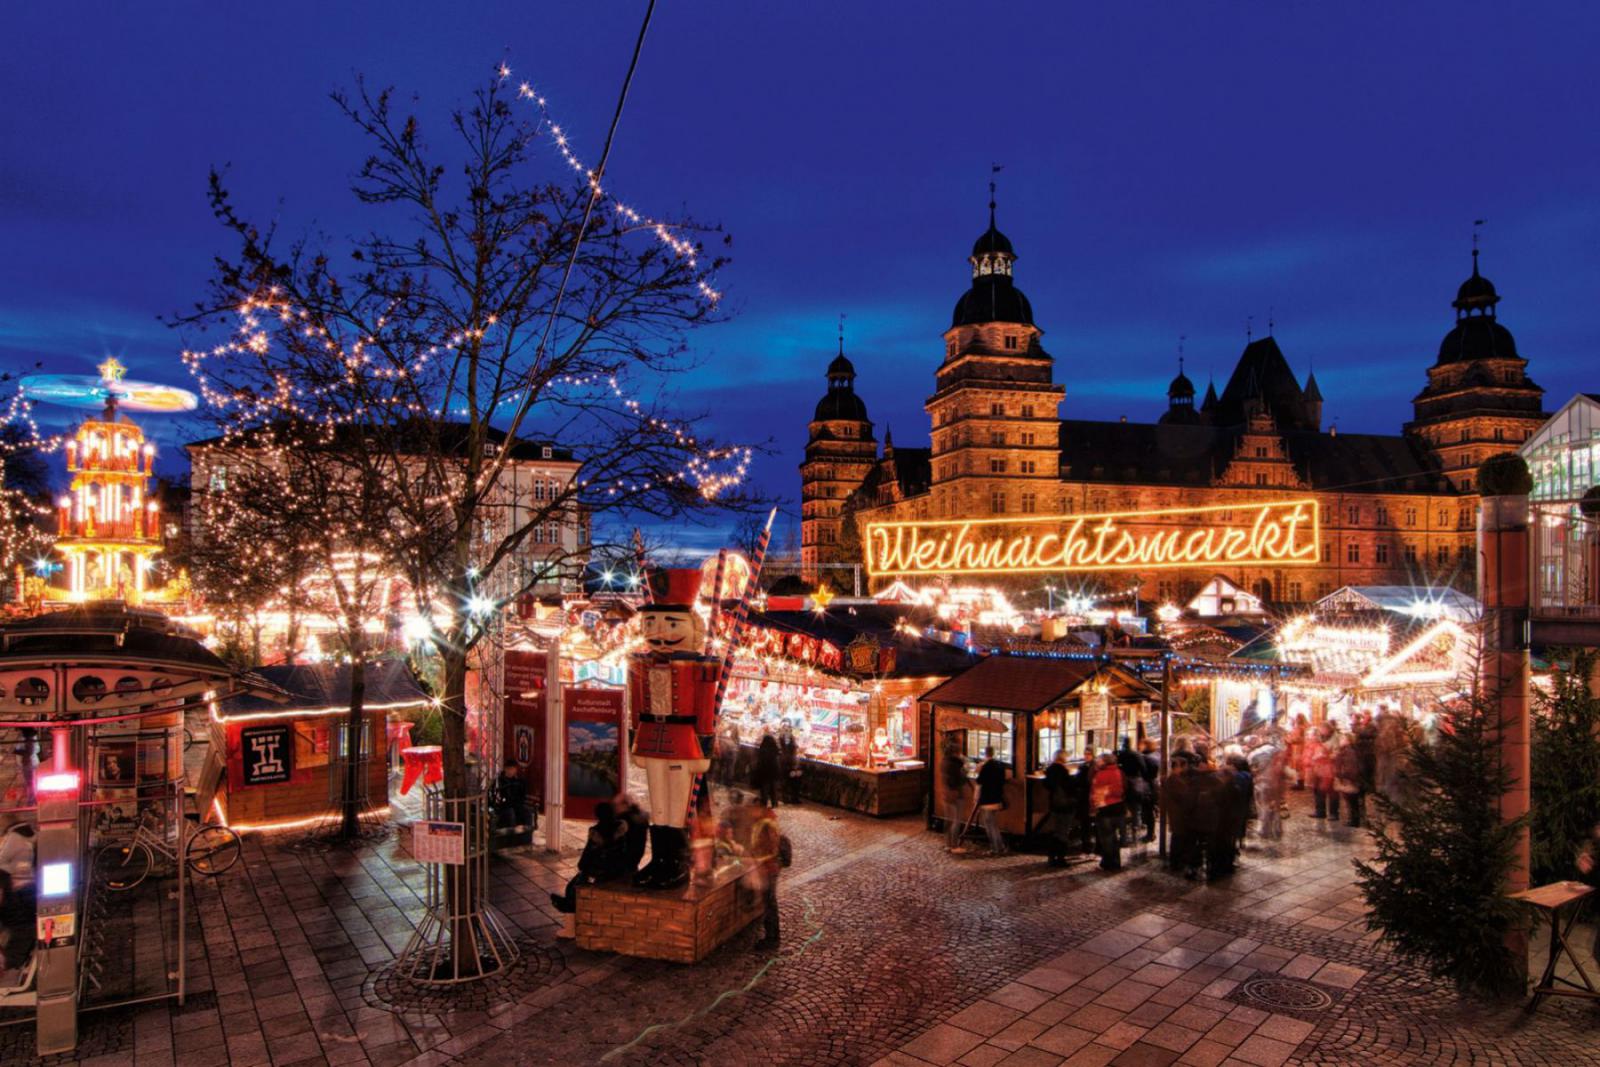 Ook op andere plakken in de regio zijn kerstmarkten, bijvoorbeeld in Aschaffenburg | 